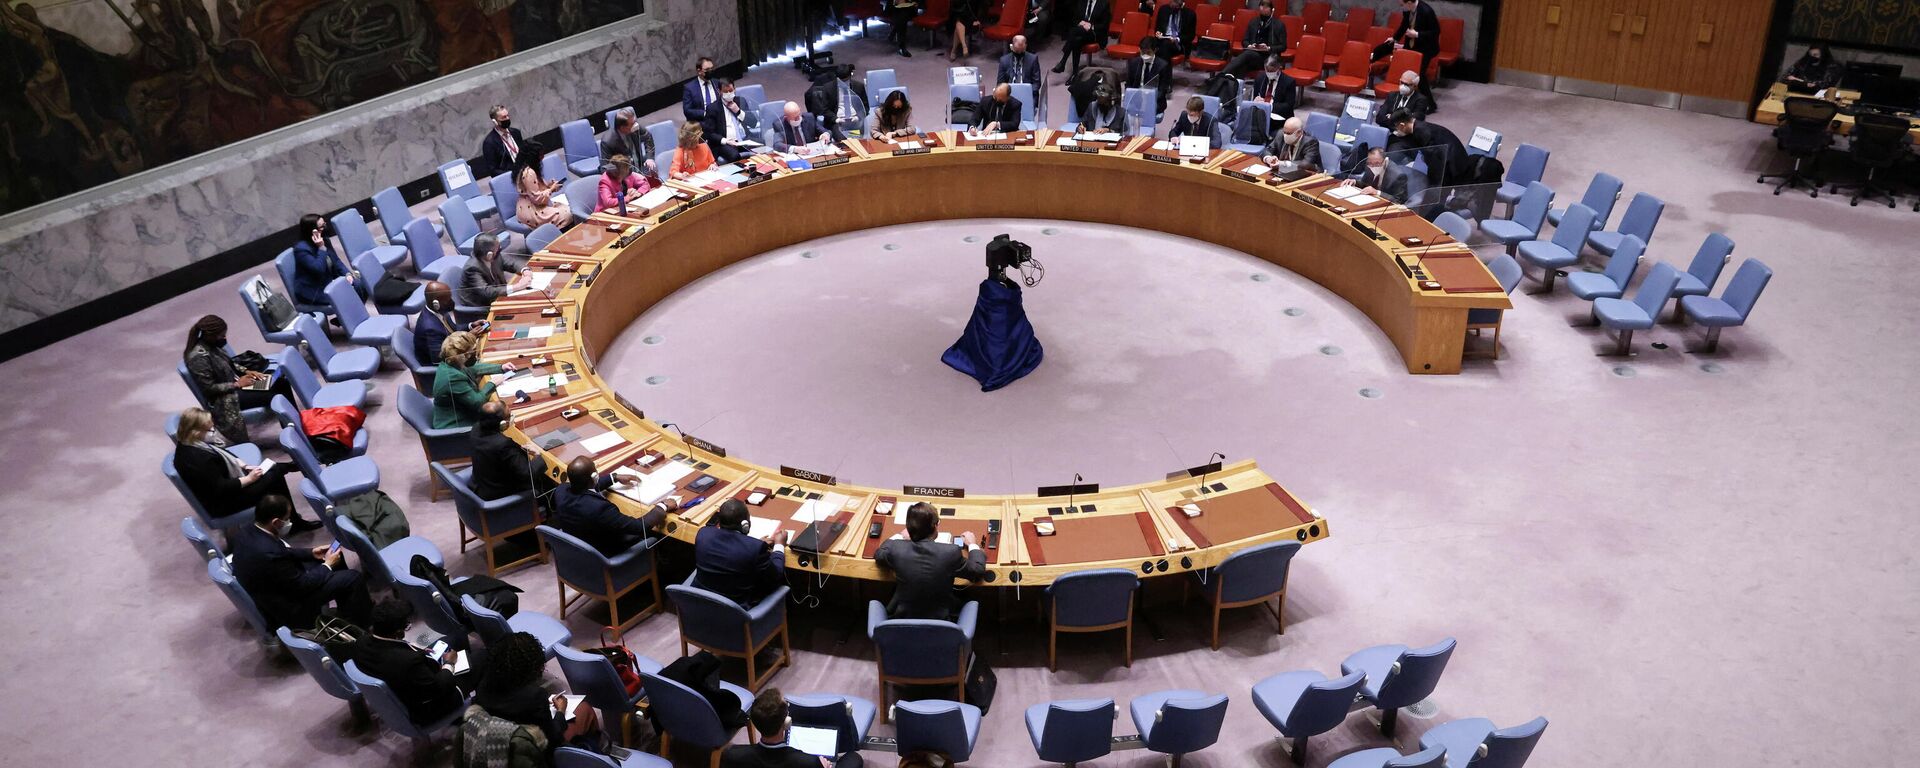 جلسة نقاش مجلس الأمن الدولي حول أزمة أوكرانيا وروسيا، الأمم المتحدة، نيويورك، الولايات المتحدة 31 يناير 2022  - سبوتنيك عربي, 1920, 15.02.2022